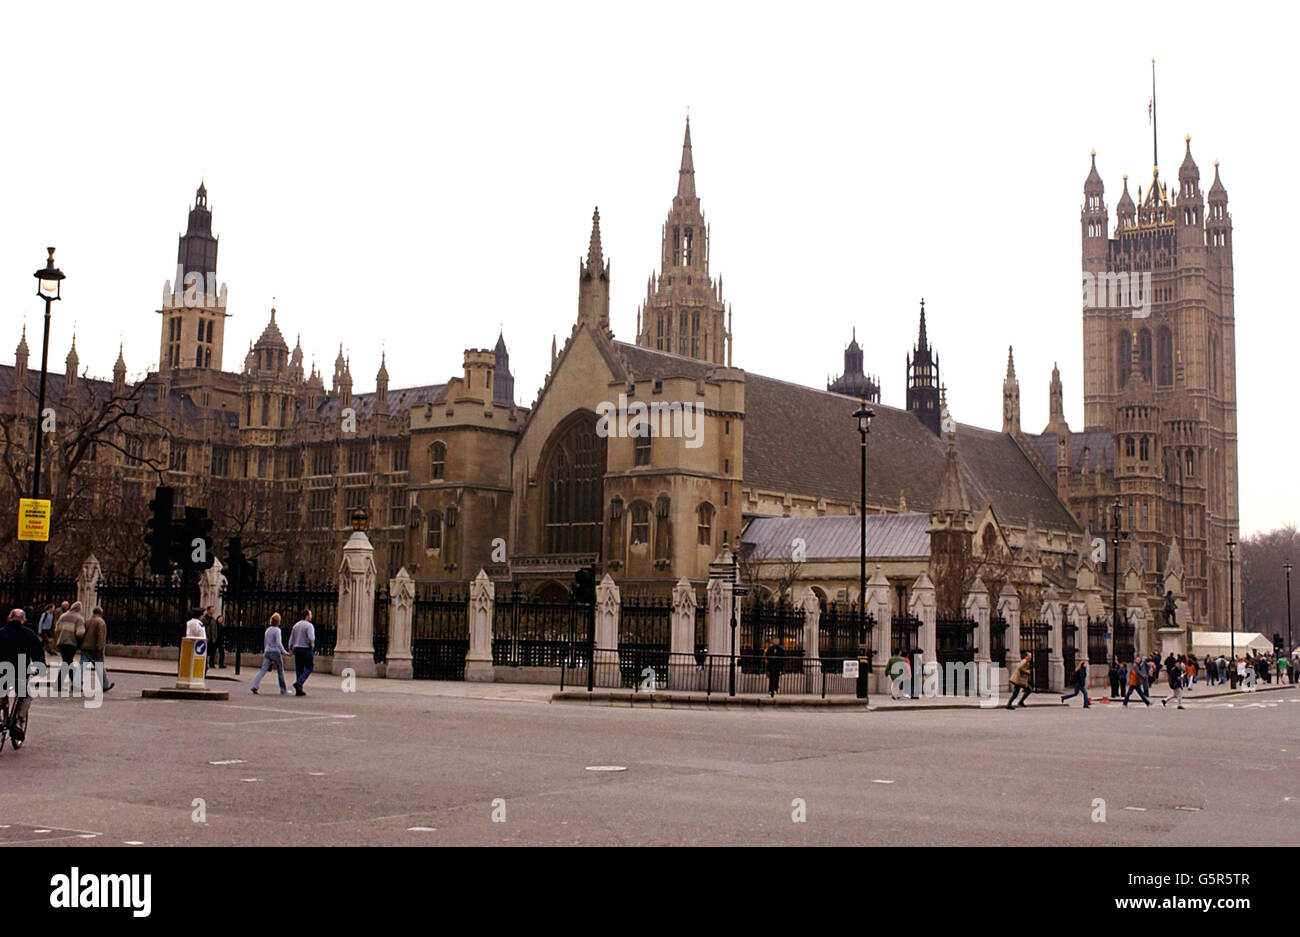 Der Palast von Westminster im Zentrum von London, wo der Leichnam der Königin Elizabeth, die Königin-Mutter, drei Tage lang in der Wesminster Hall liegen wird, bevor in der Westminster Abbey ein feierliches Begräbnis abgehalten wird. Stockfoto